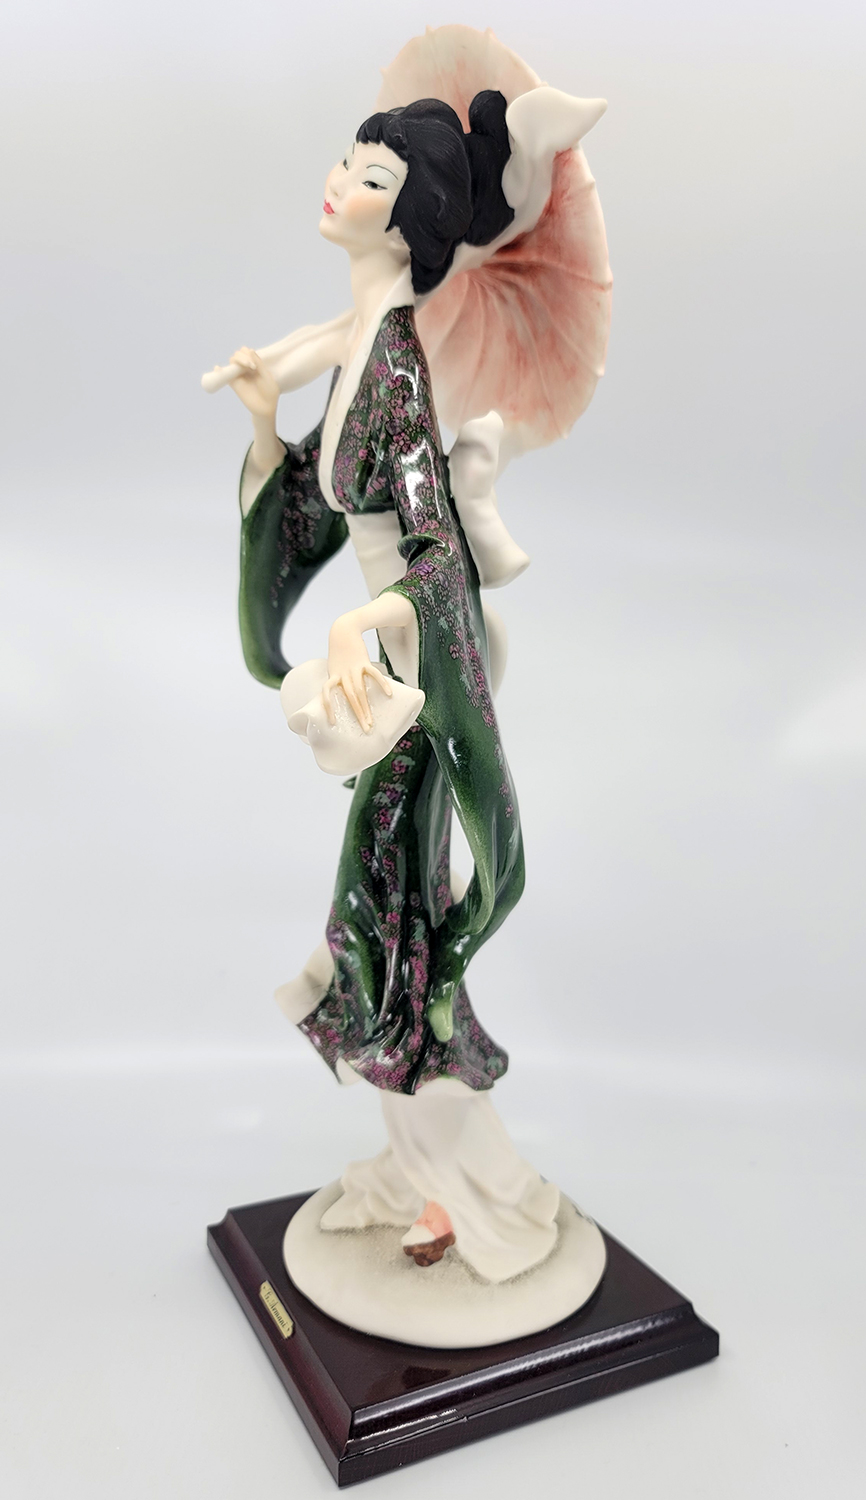 Giuseppe Armani Oriental Lady Chu Chu San 612c Open Edition Sculpture Sculpture